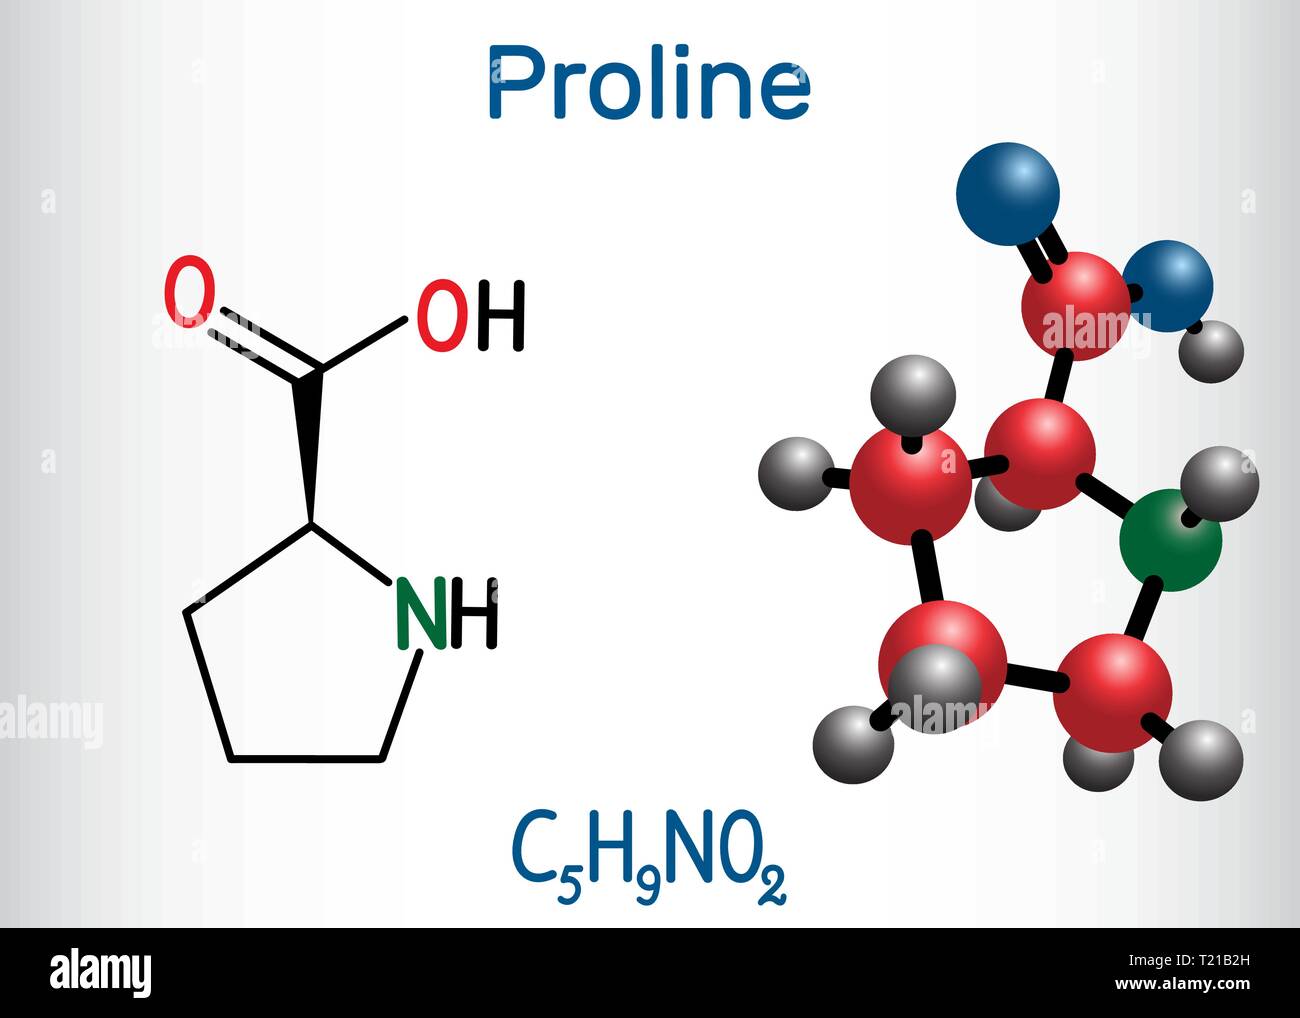 Proline (L-Prolin, Pro, P) proteinogene Aminosäure Molekül. Strukturelle chemische Formel und Molekül-Modell. Vector Illustration Stock Vektor